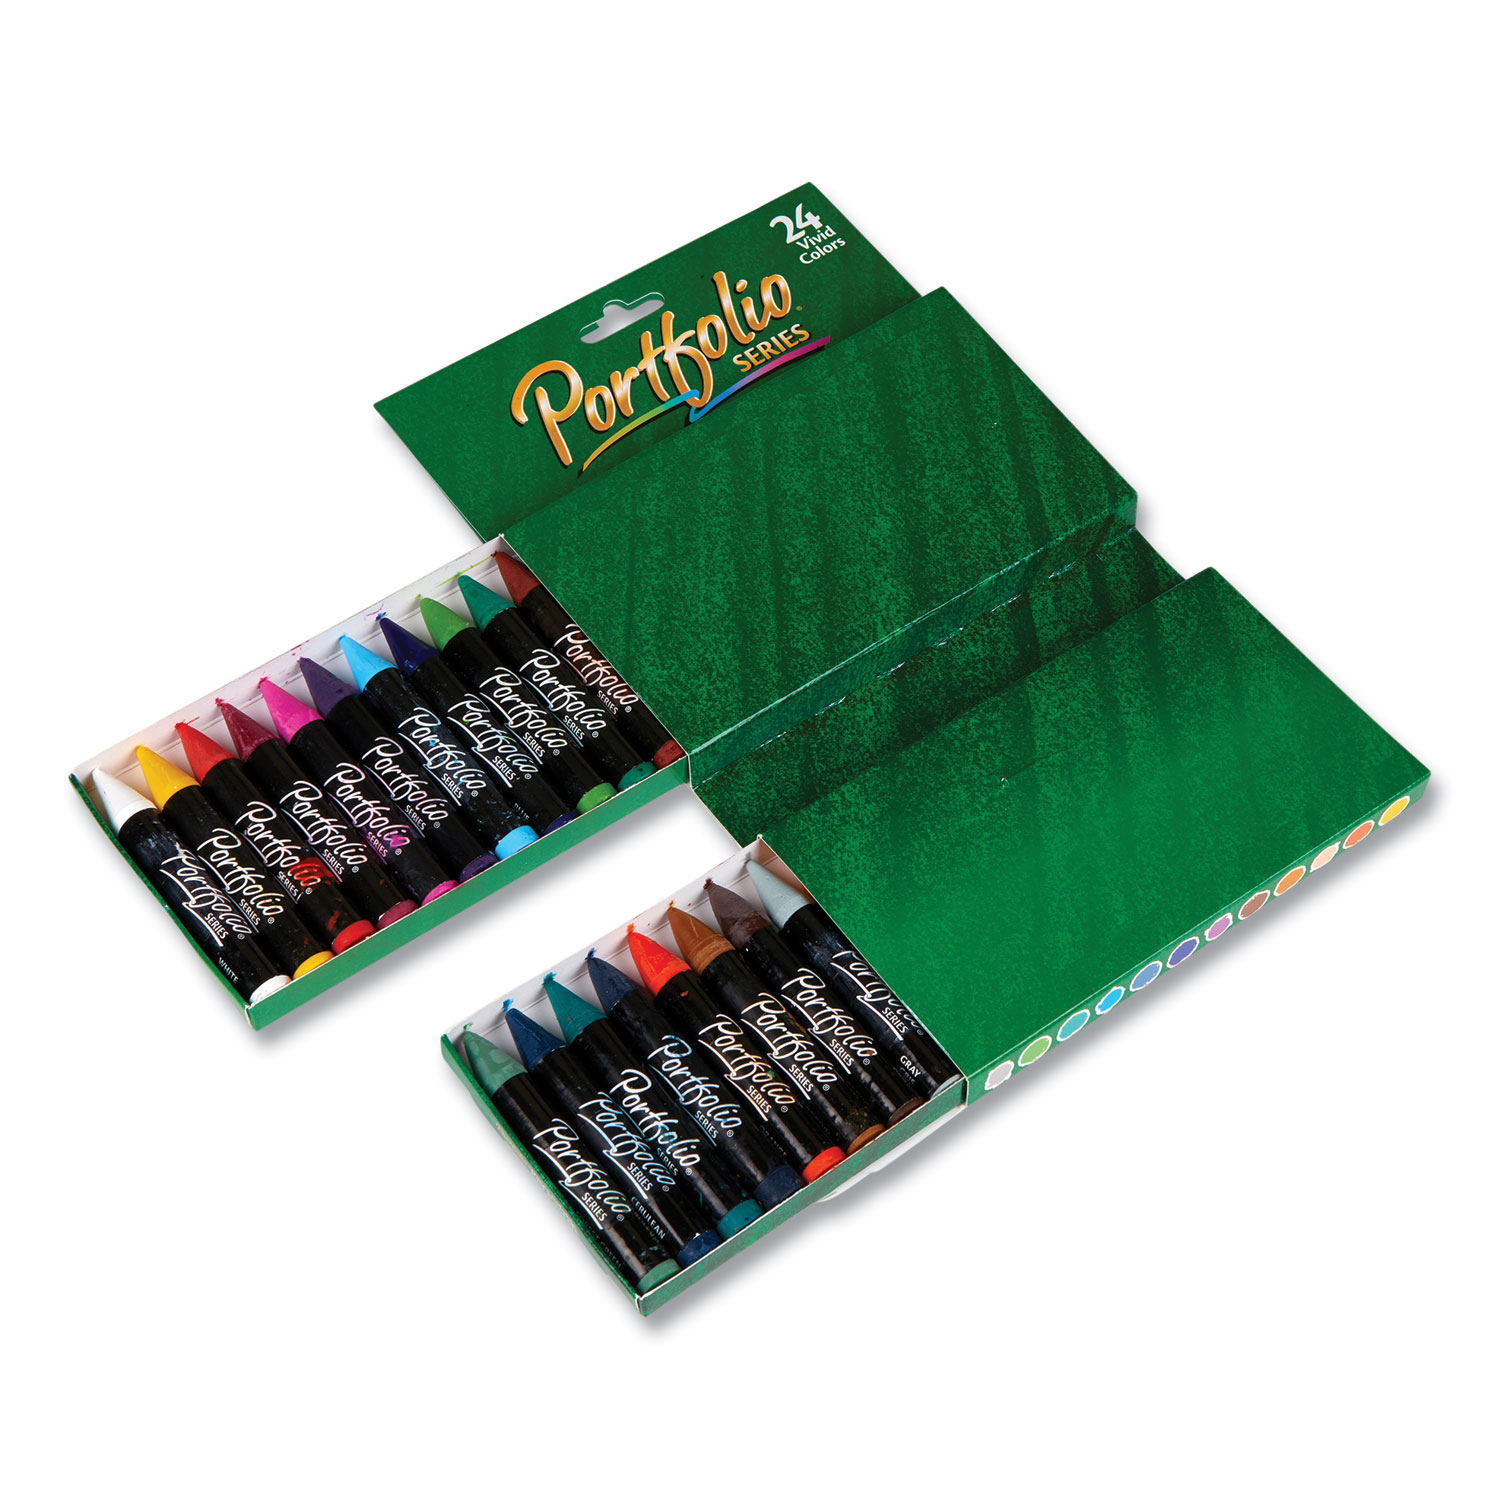 Portfolio Series Oil Pastels, 24 count., Crayola.com